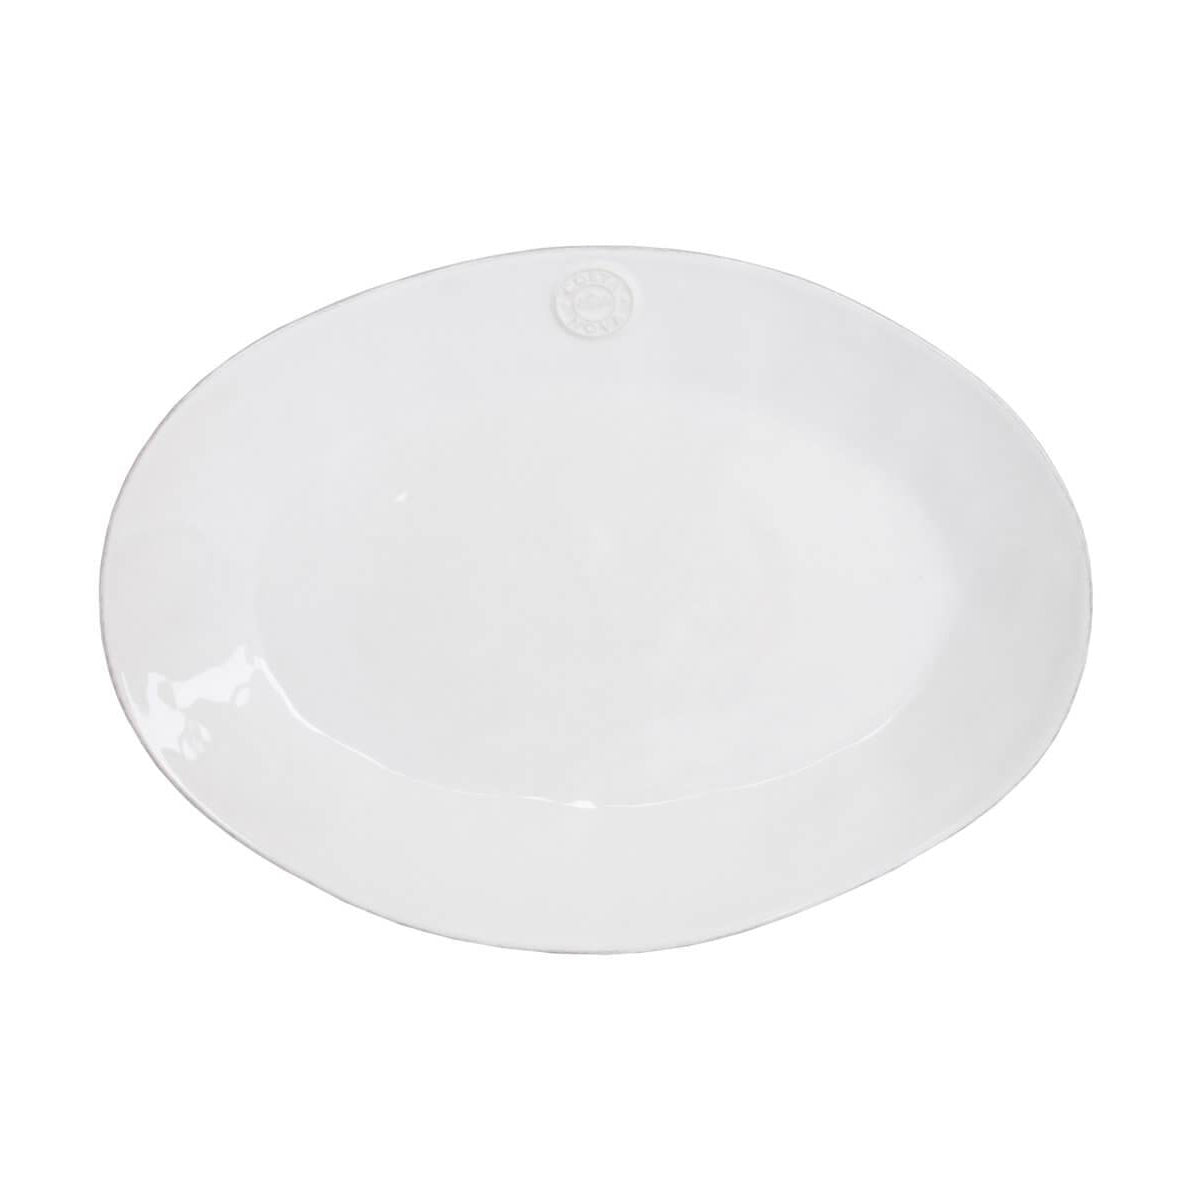 Costa Nova White Oval Serving Platter 40cm